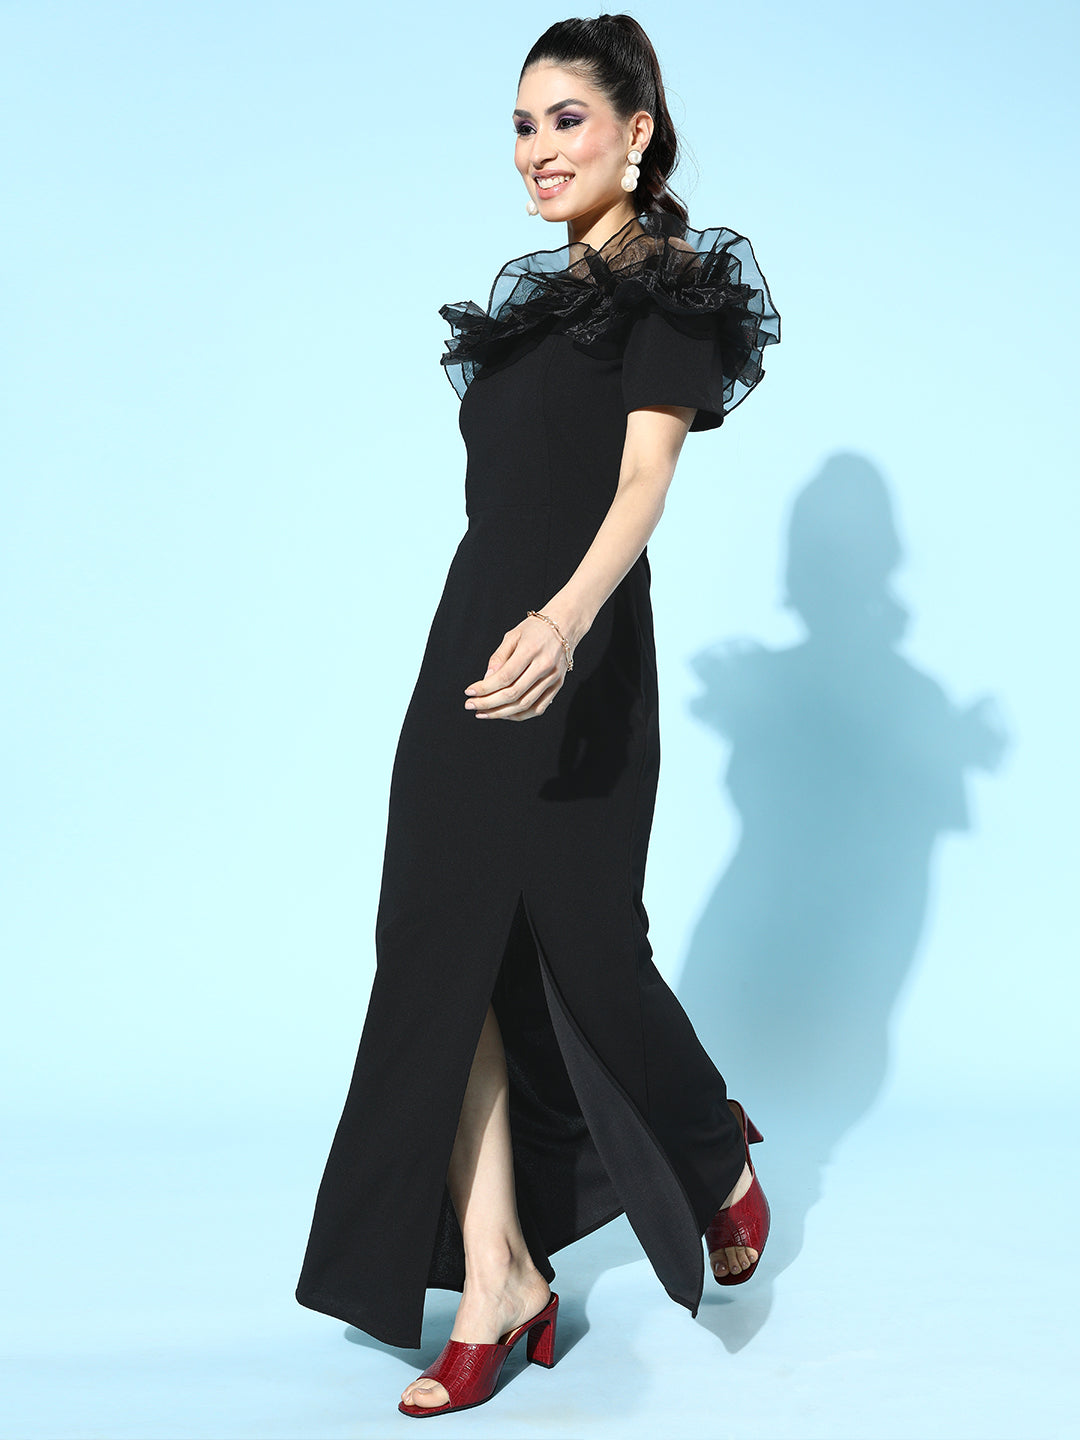 Athena Stylish Black Ruffled Tulle Dress - Athena Lifestyle